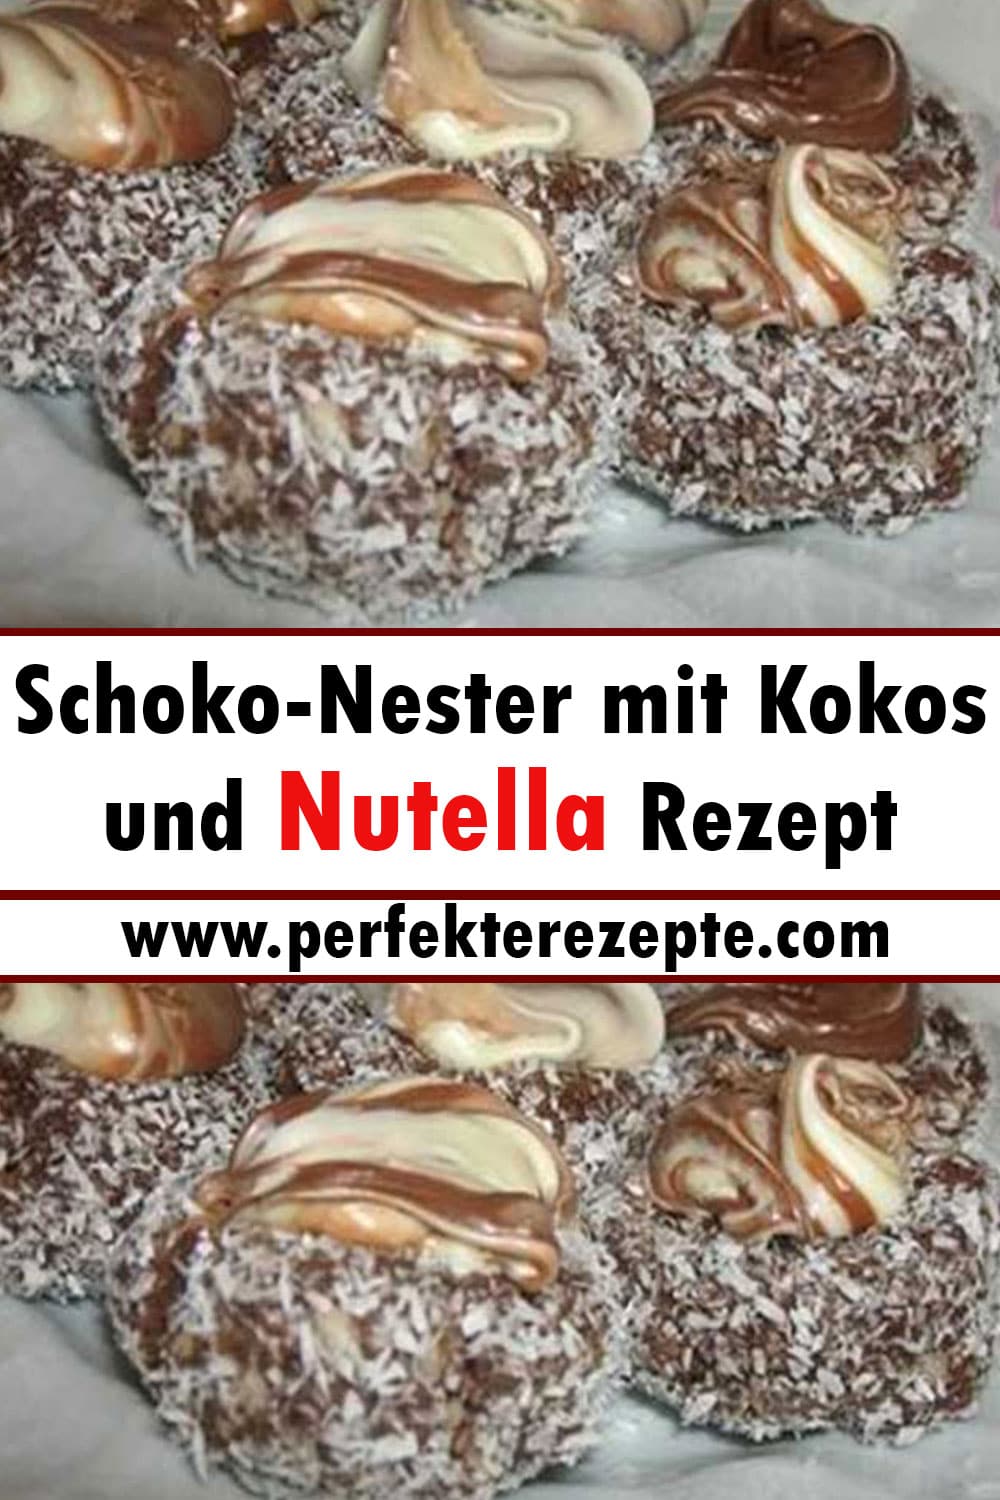 Schoko-Nester mit Kokos und Nutella Rezept